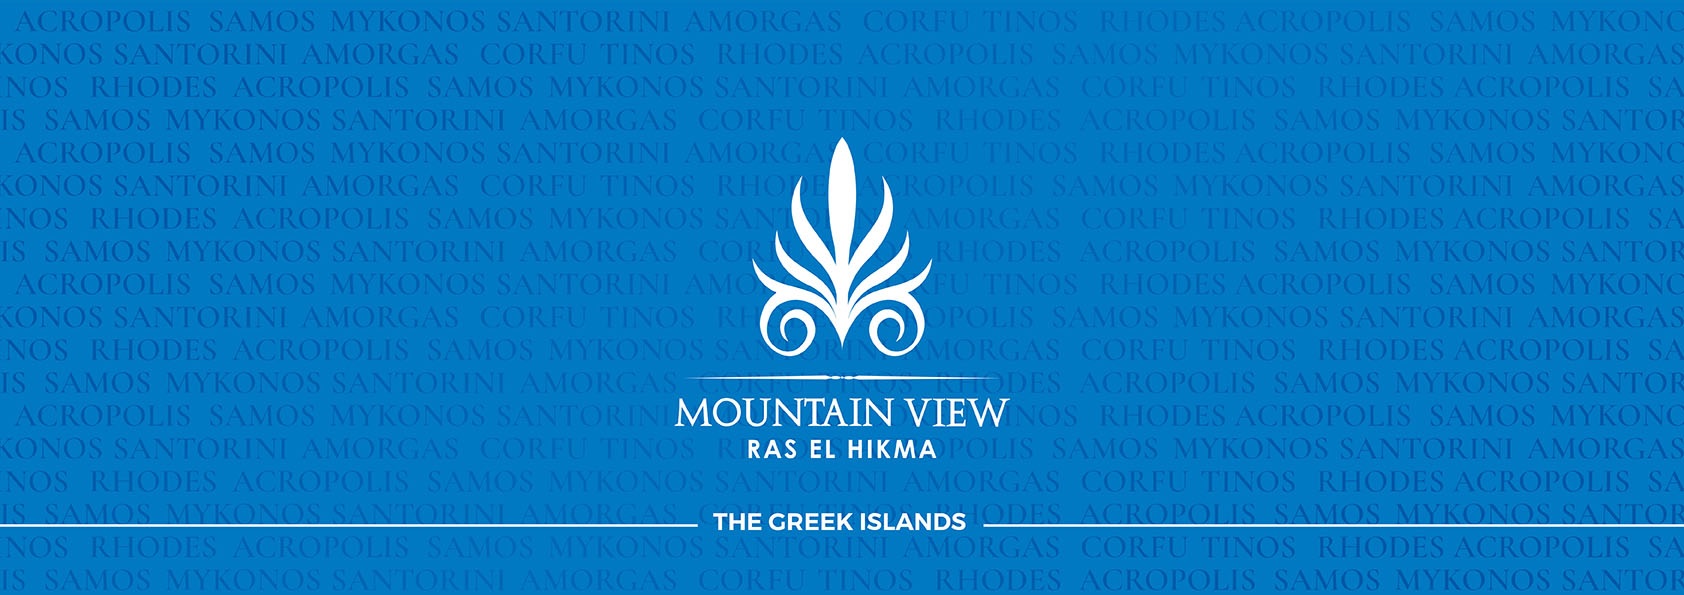 Mountain View Ras El Hekma